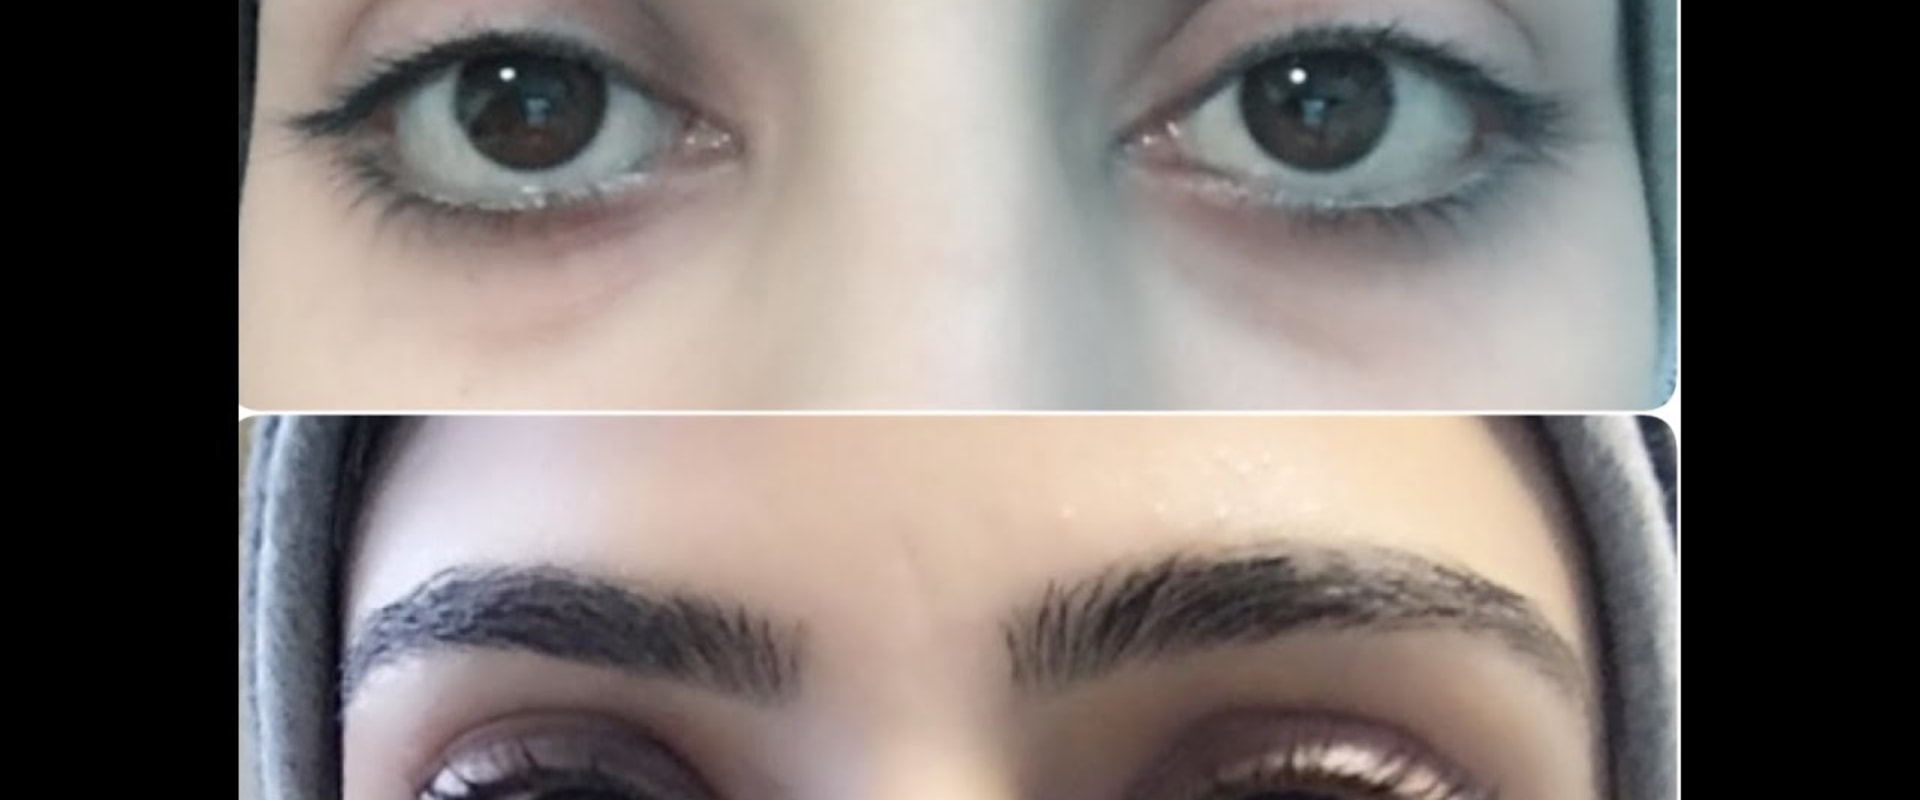 Can fake eyelashes look natural?